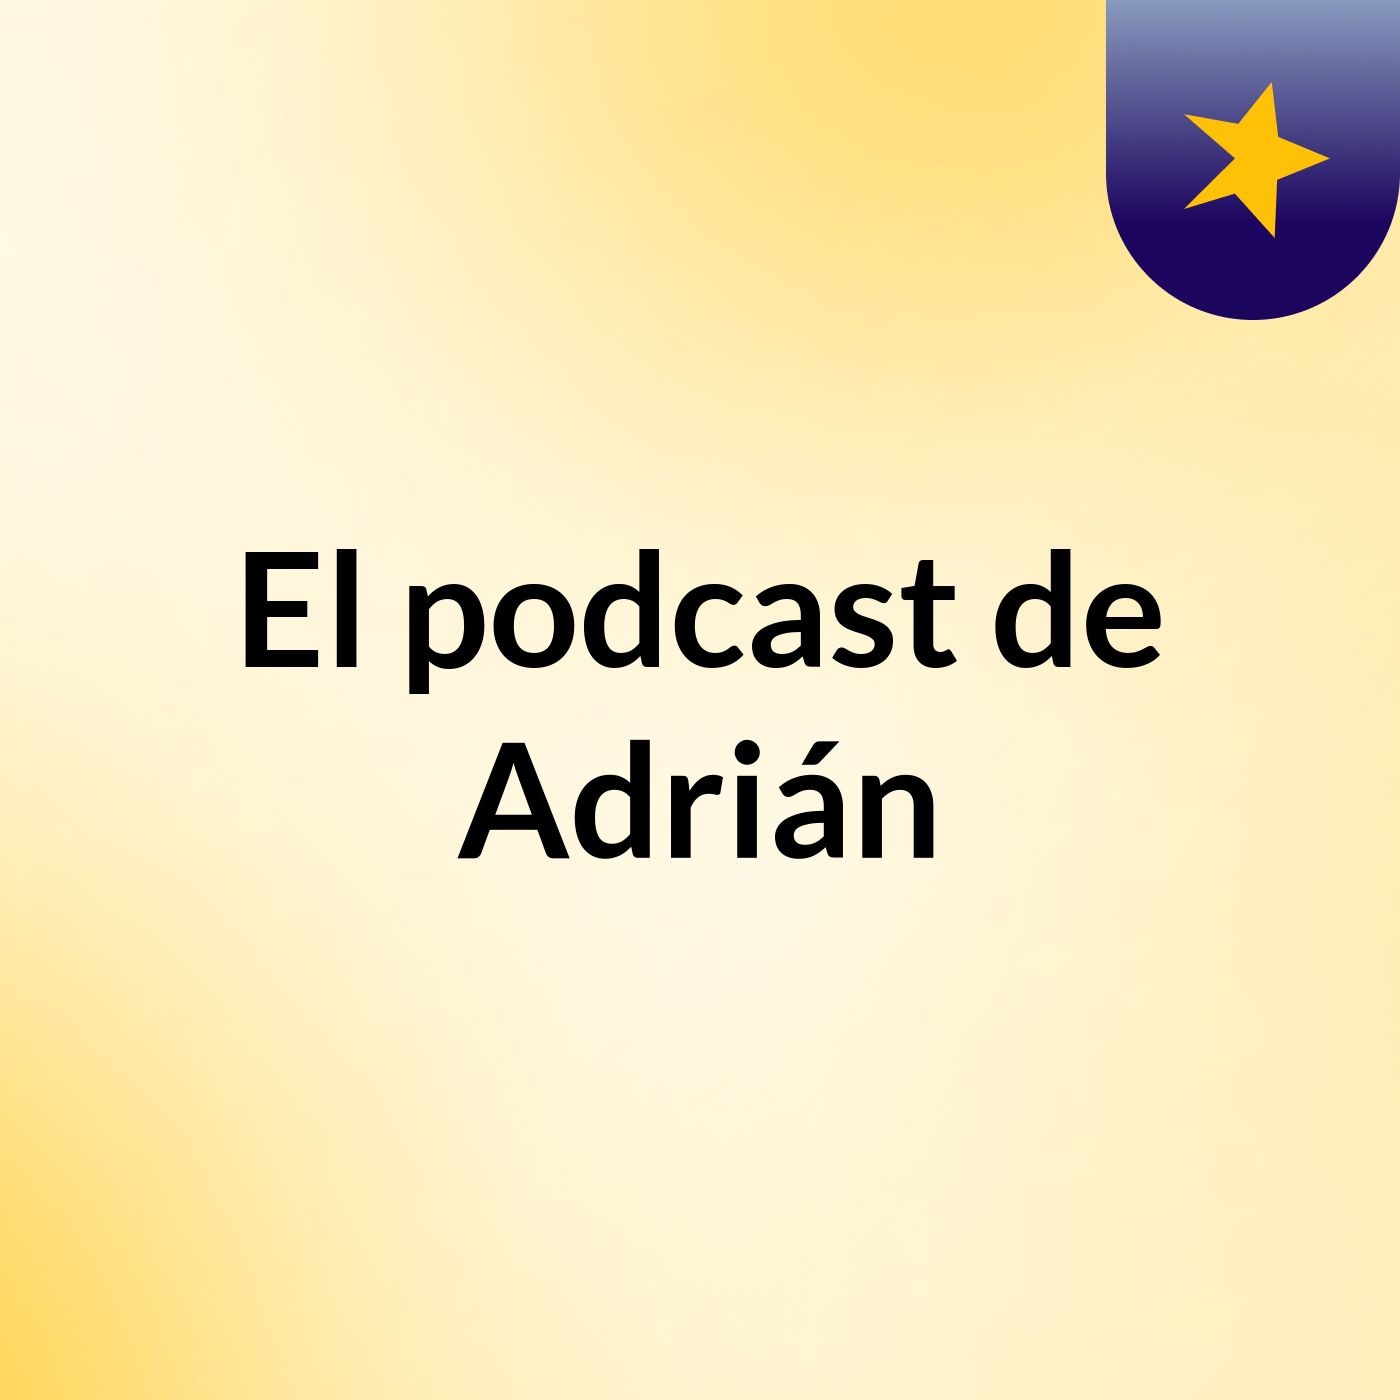 Episodio 6 - El podcast de Adrián